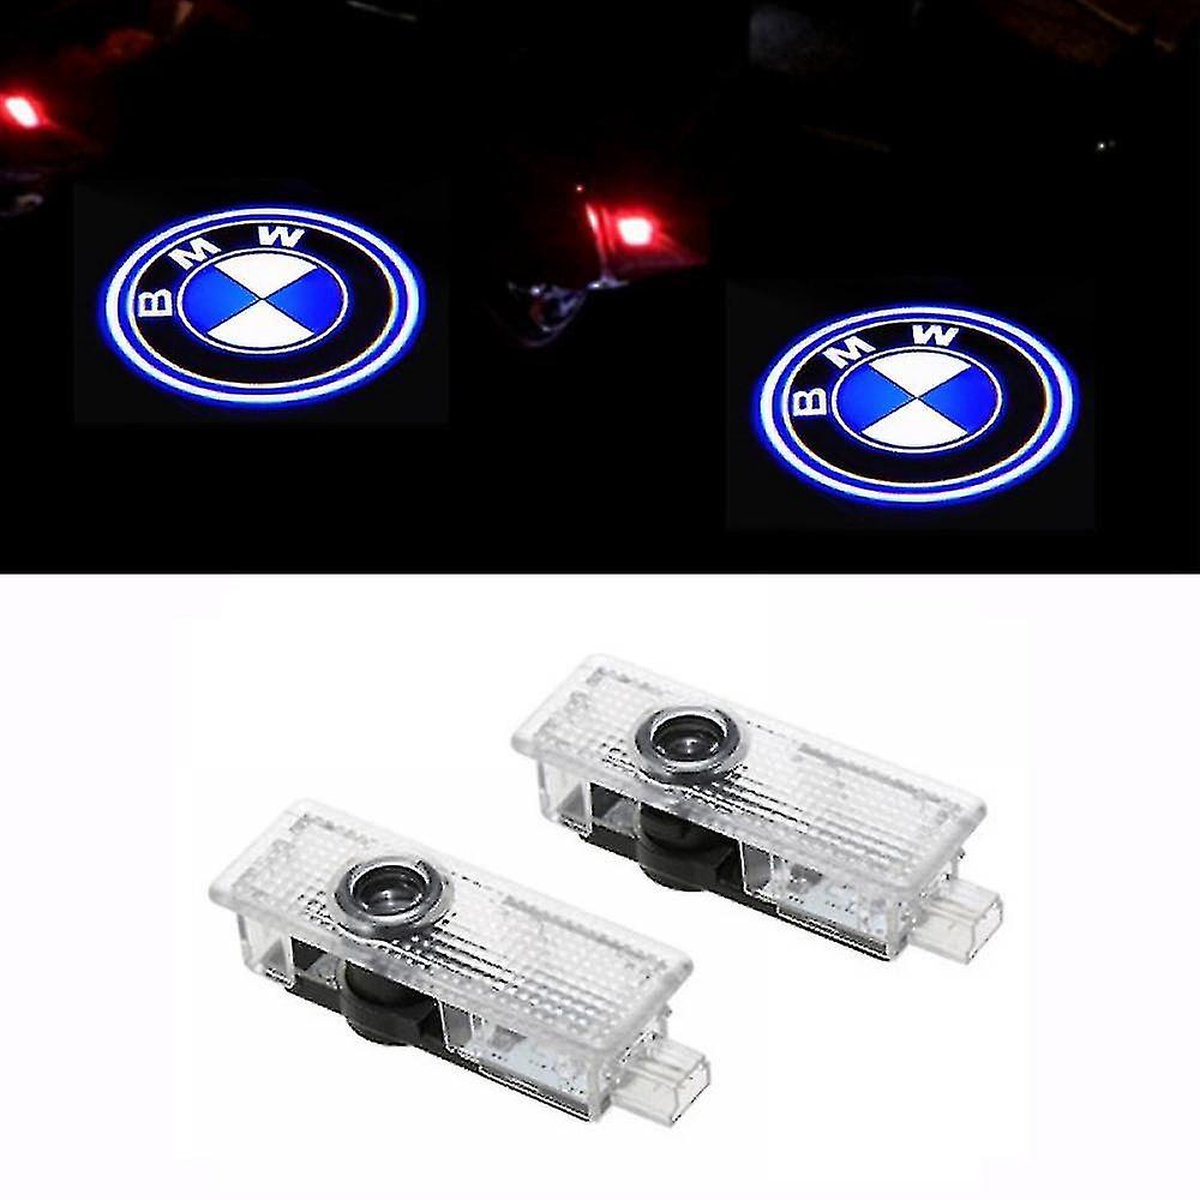 BMW Logo Projector - Auto deur verlichting - Auto interieur - BMW accessoires - Set van 2 - BMW 1-3-5-6-7-X-Z series